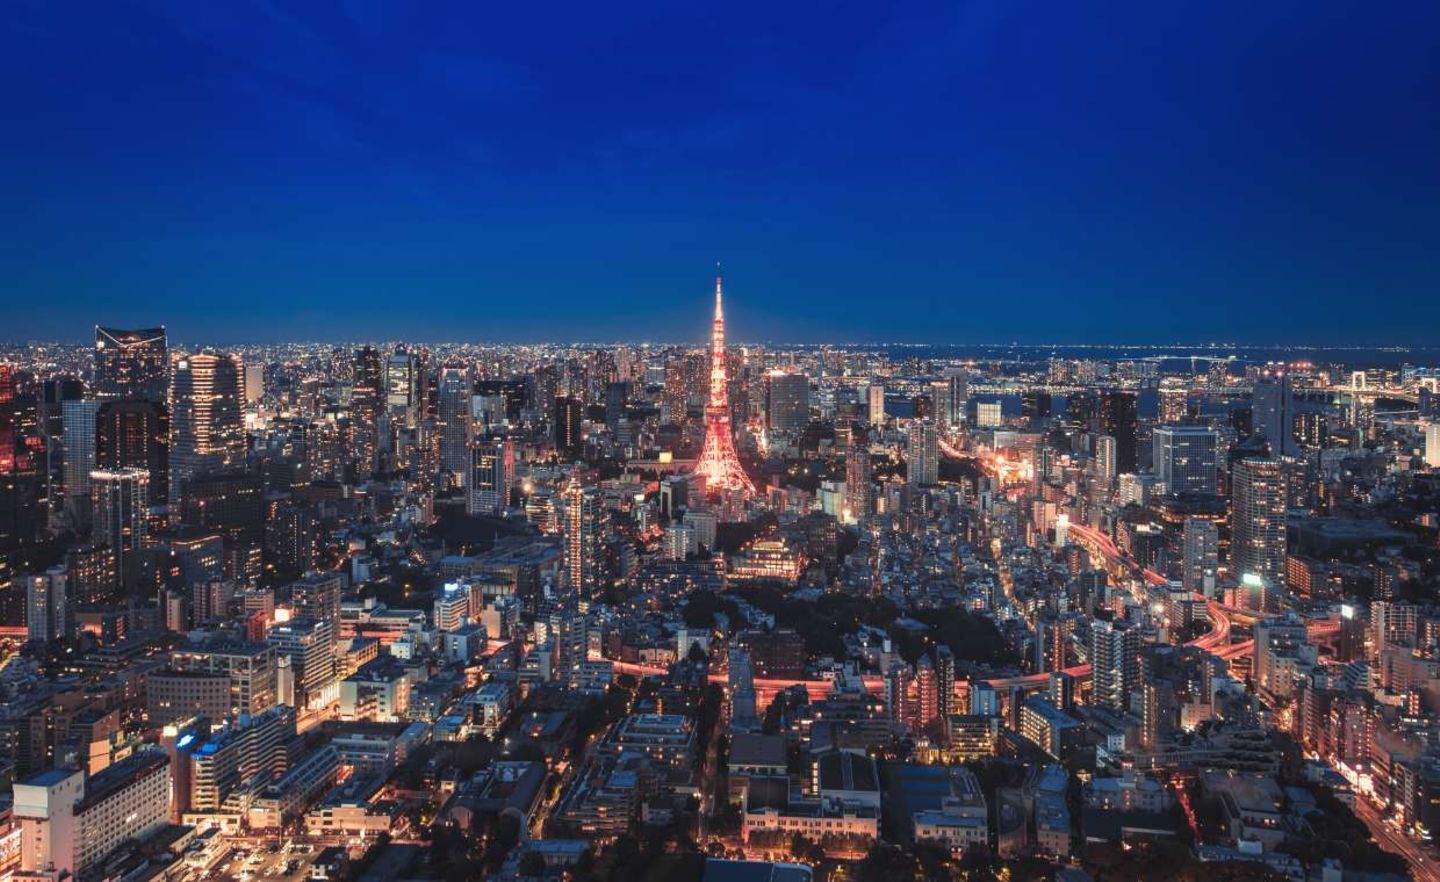 Im Großraum Tokio leben knapp 38 Millionen Menschen